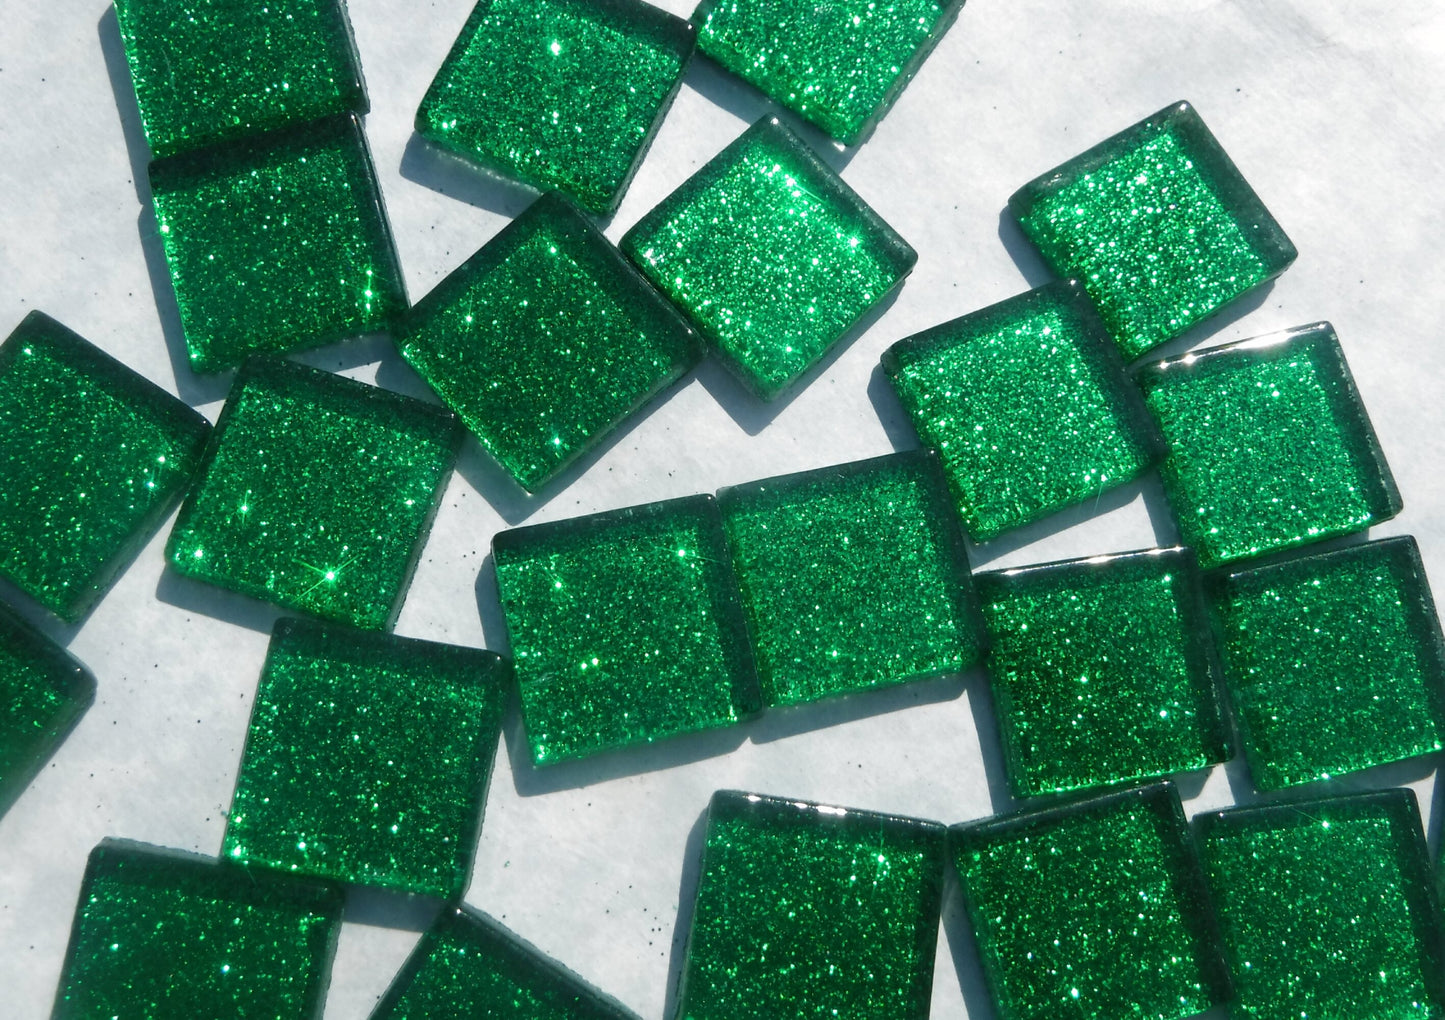 Green Glitter Tiles - 20mm Mosaic Tiles - 25 Metallic Glass Tiles